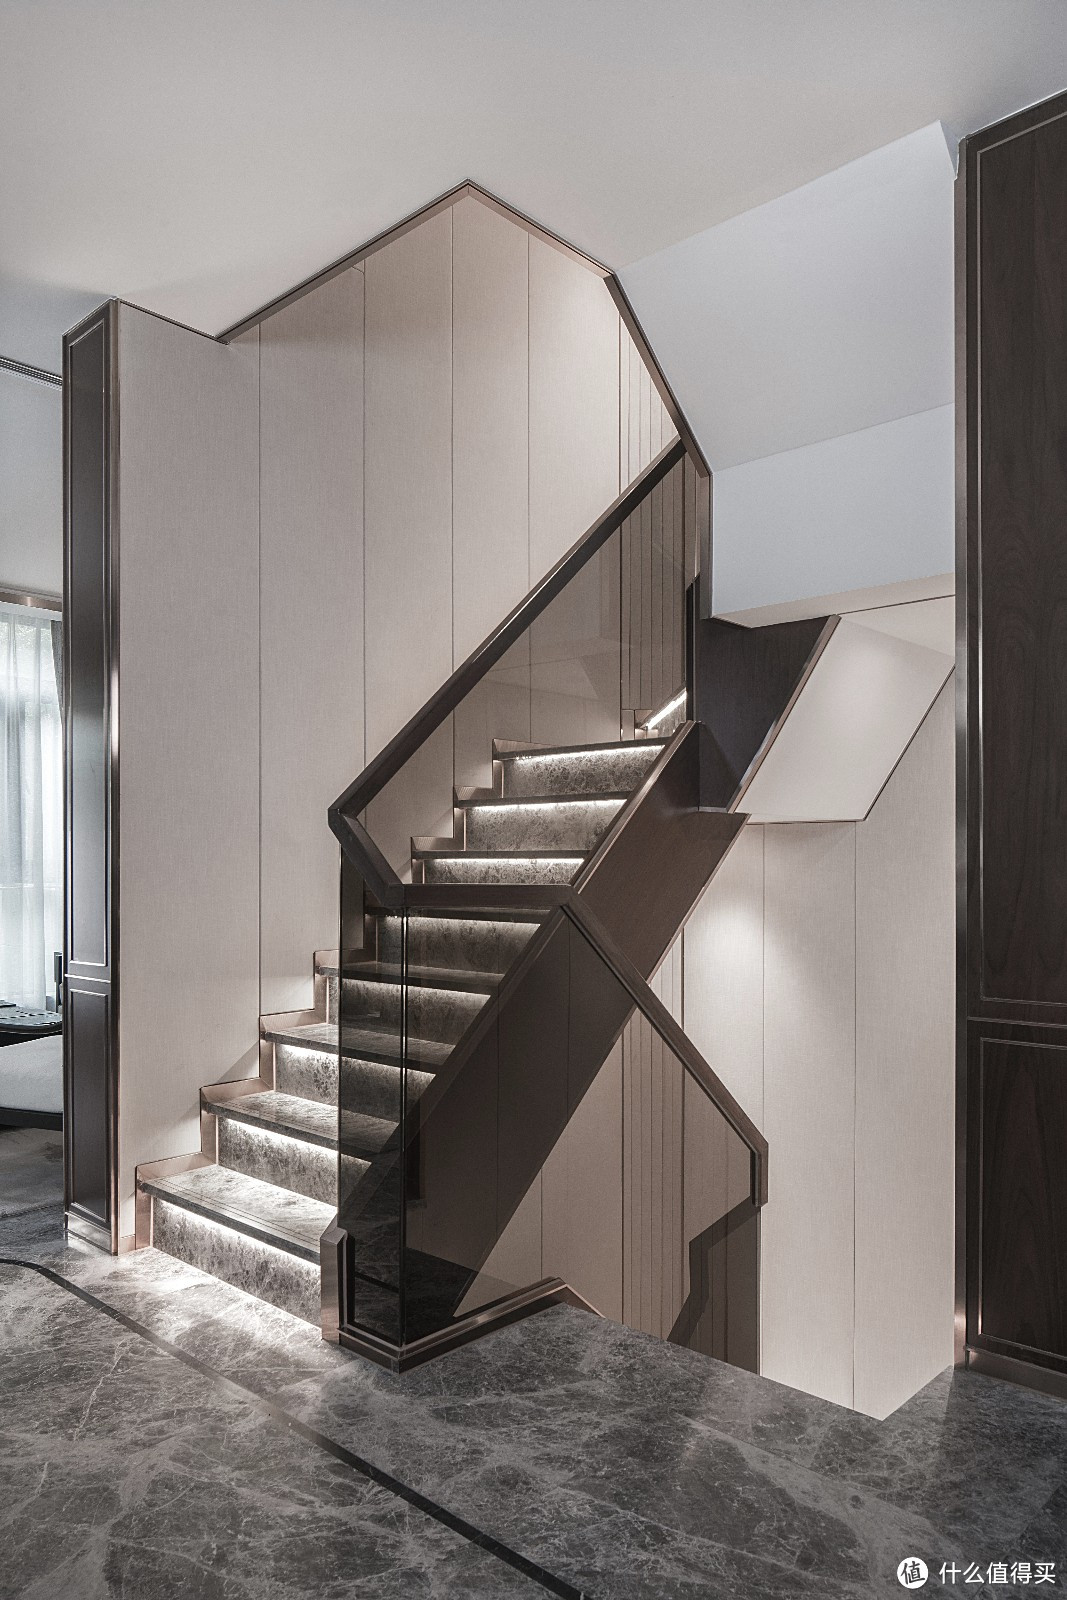 了解楼梯的形式,结构和材质,找到适合自己的款式